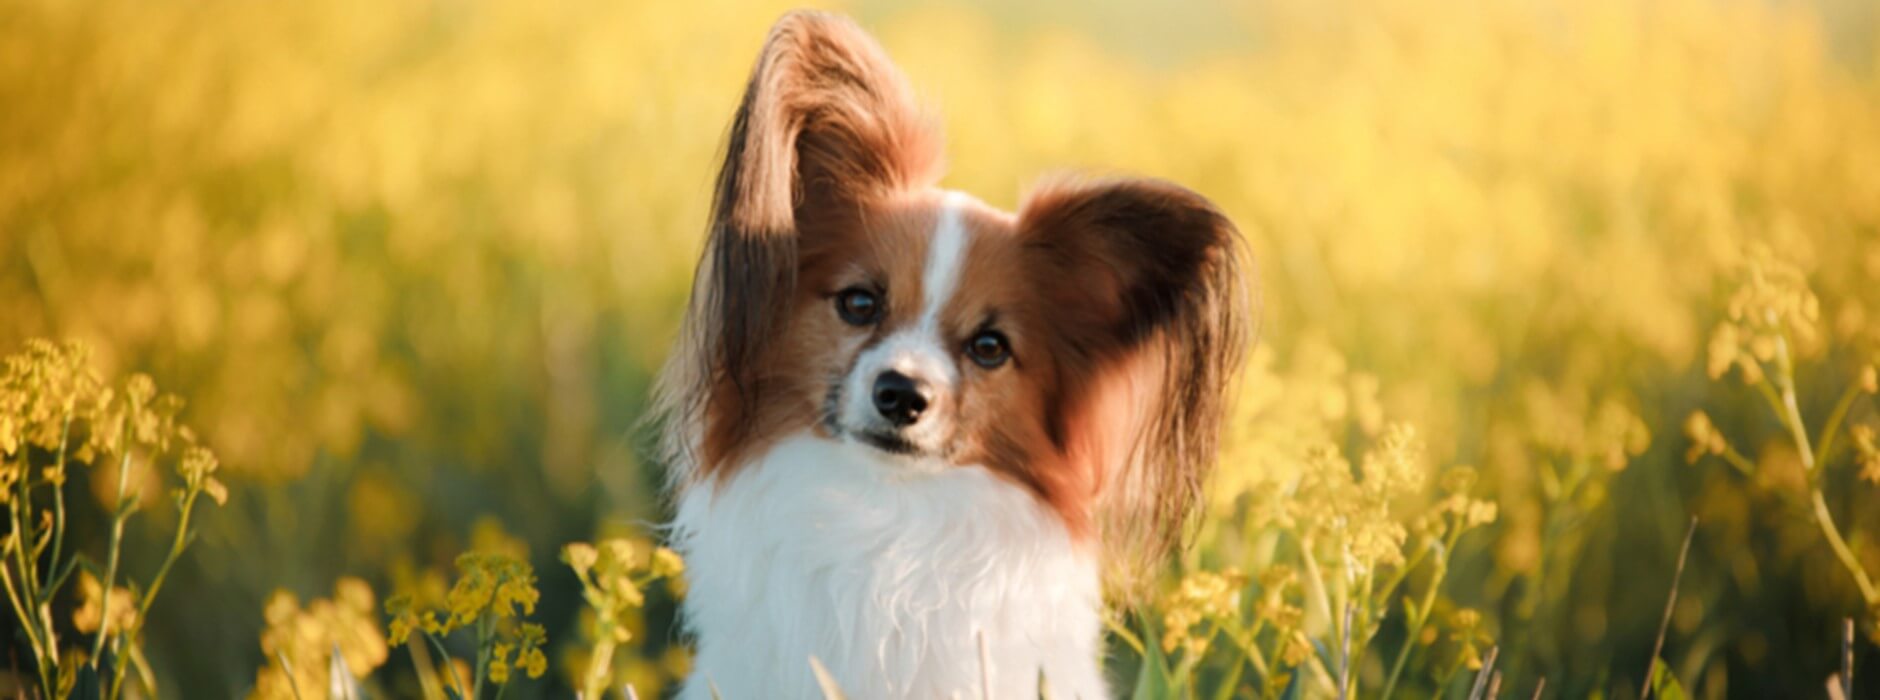 Pequeno cão atento no meio de um campo florido